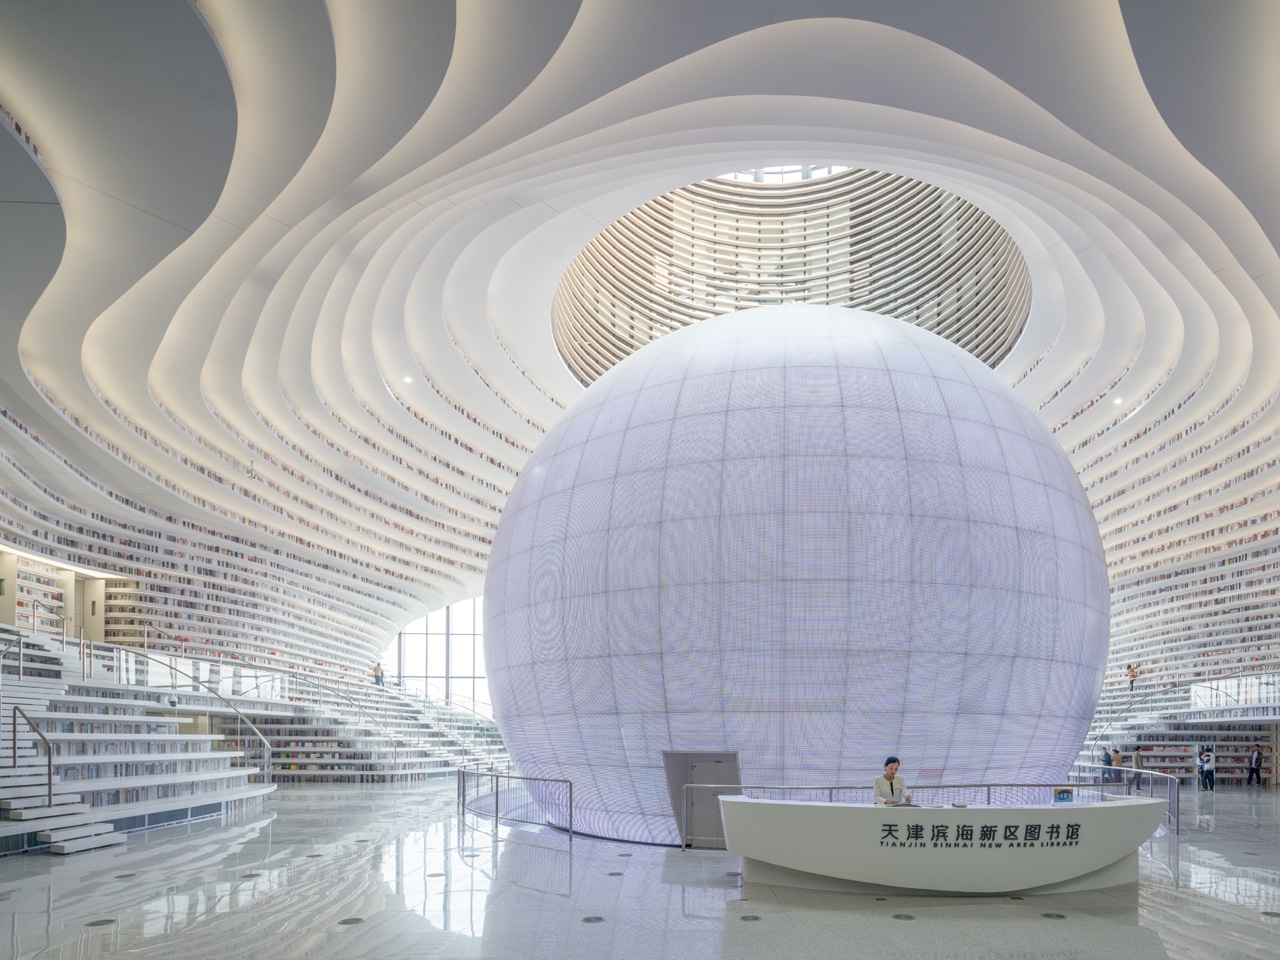 La nueva biblioteca futurista es una de las más bonitas del mundo 